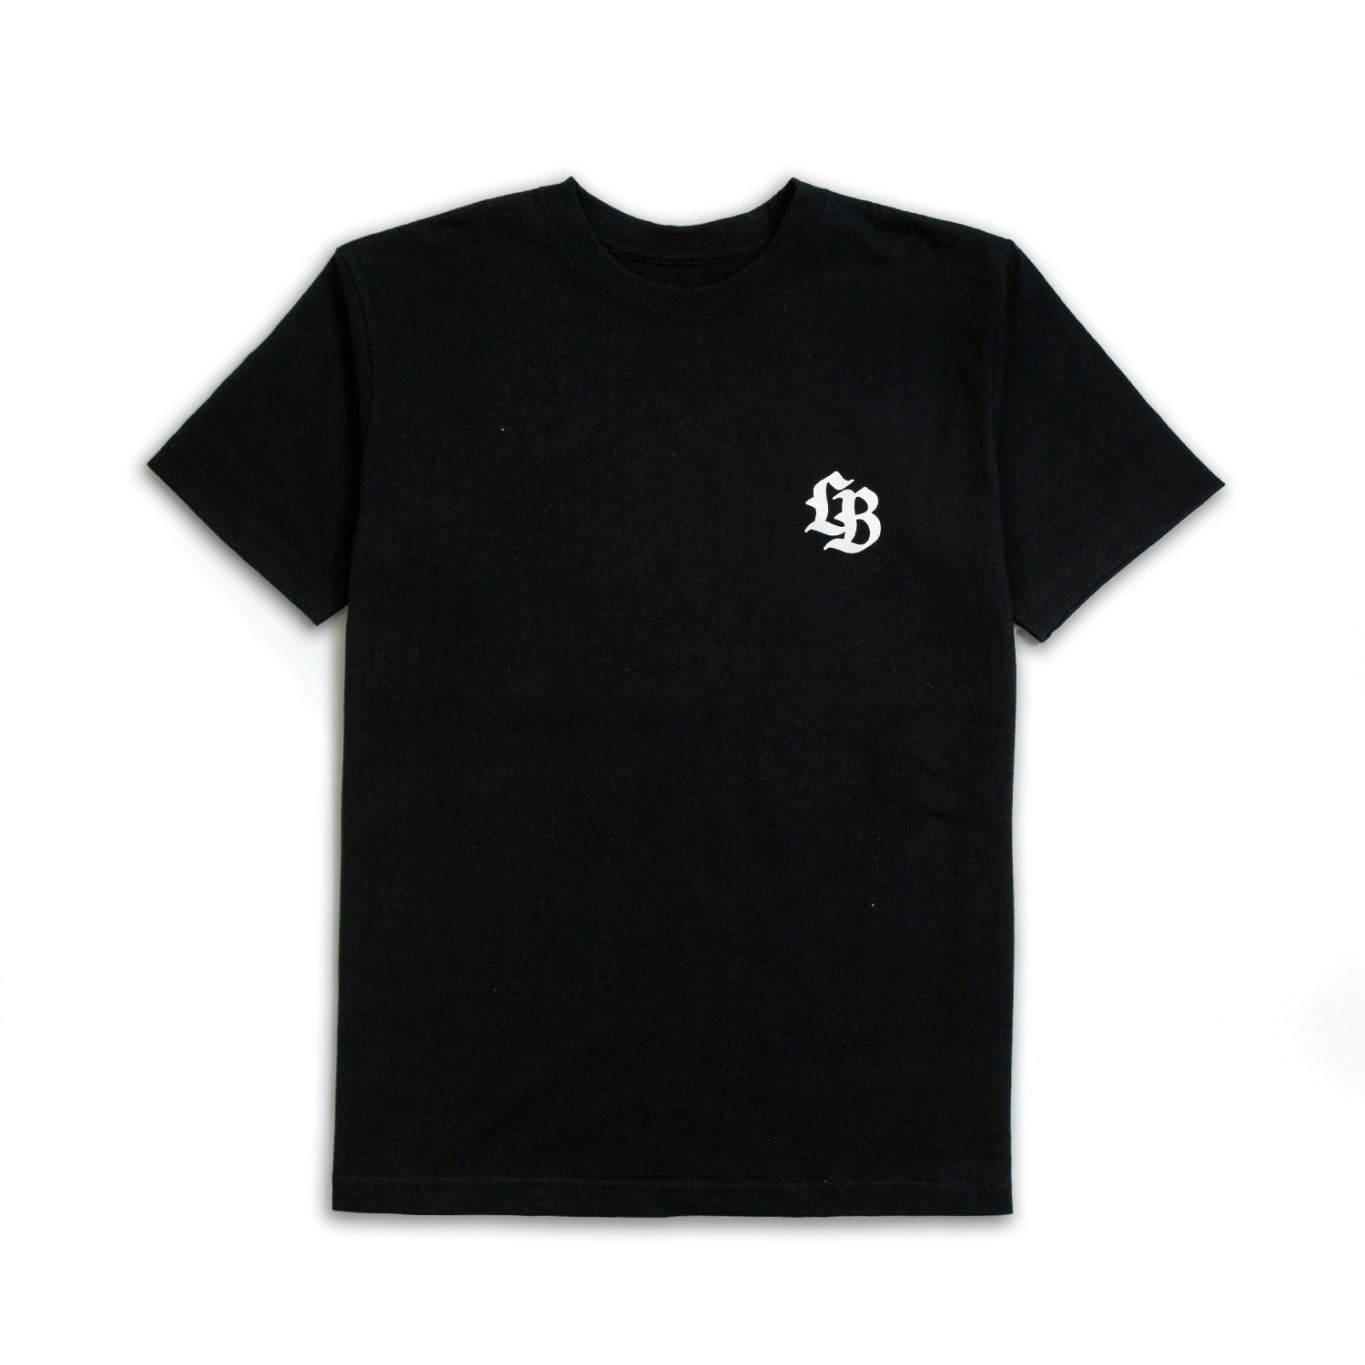 Liberty Walk 'LB' T-Shirt (Black)